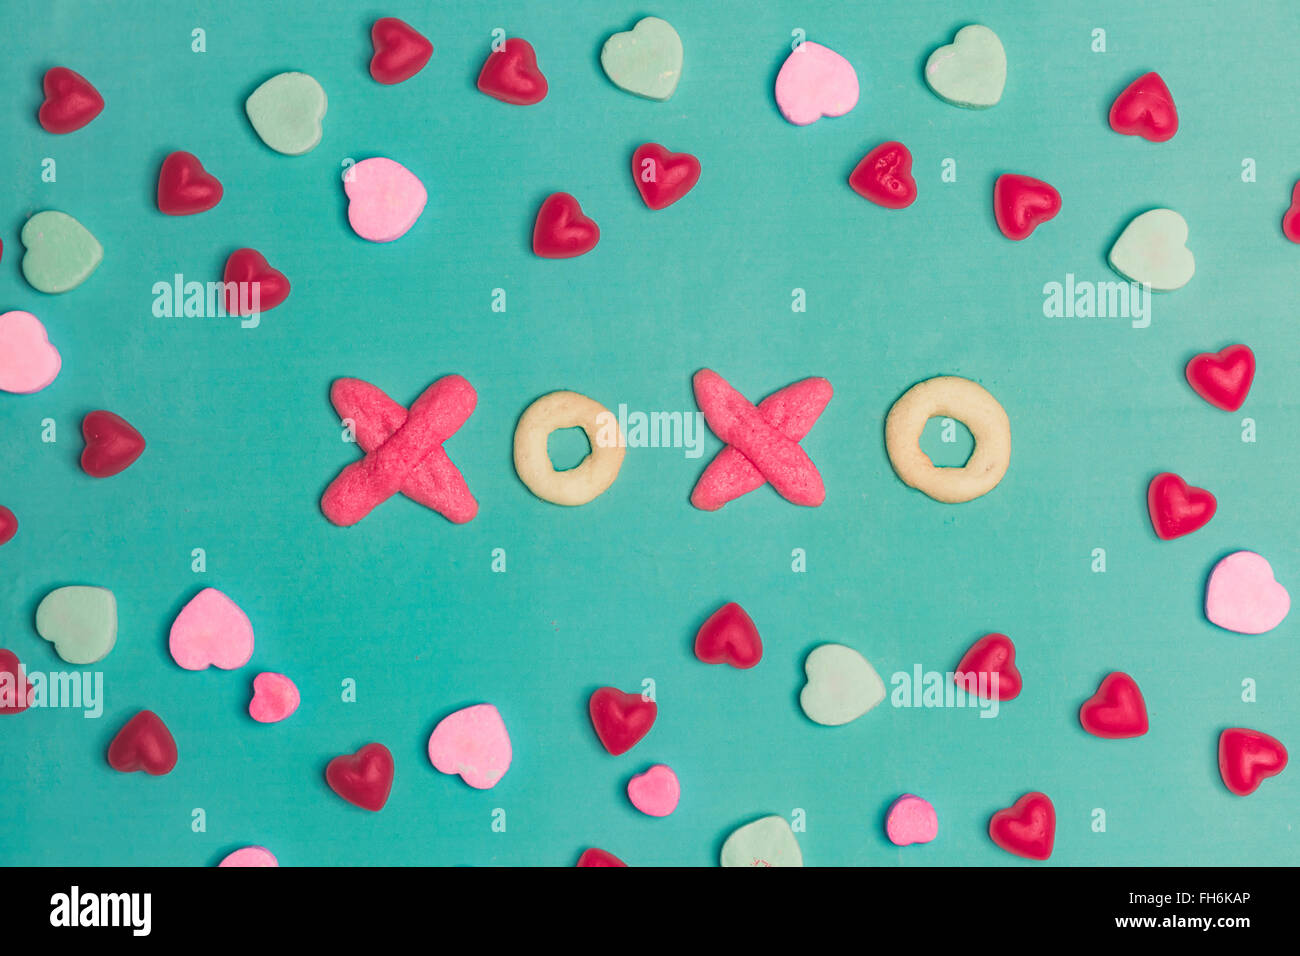 Valentine's Day XOXO Typographie Cookies et Conversation Cœur sur fond vert Banque D'Images